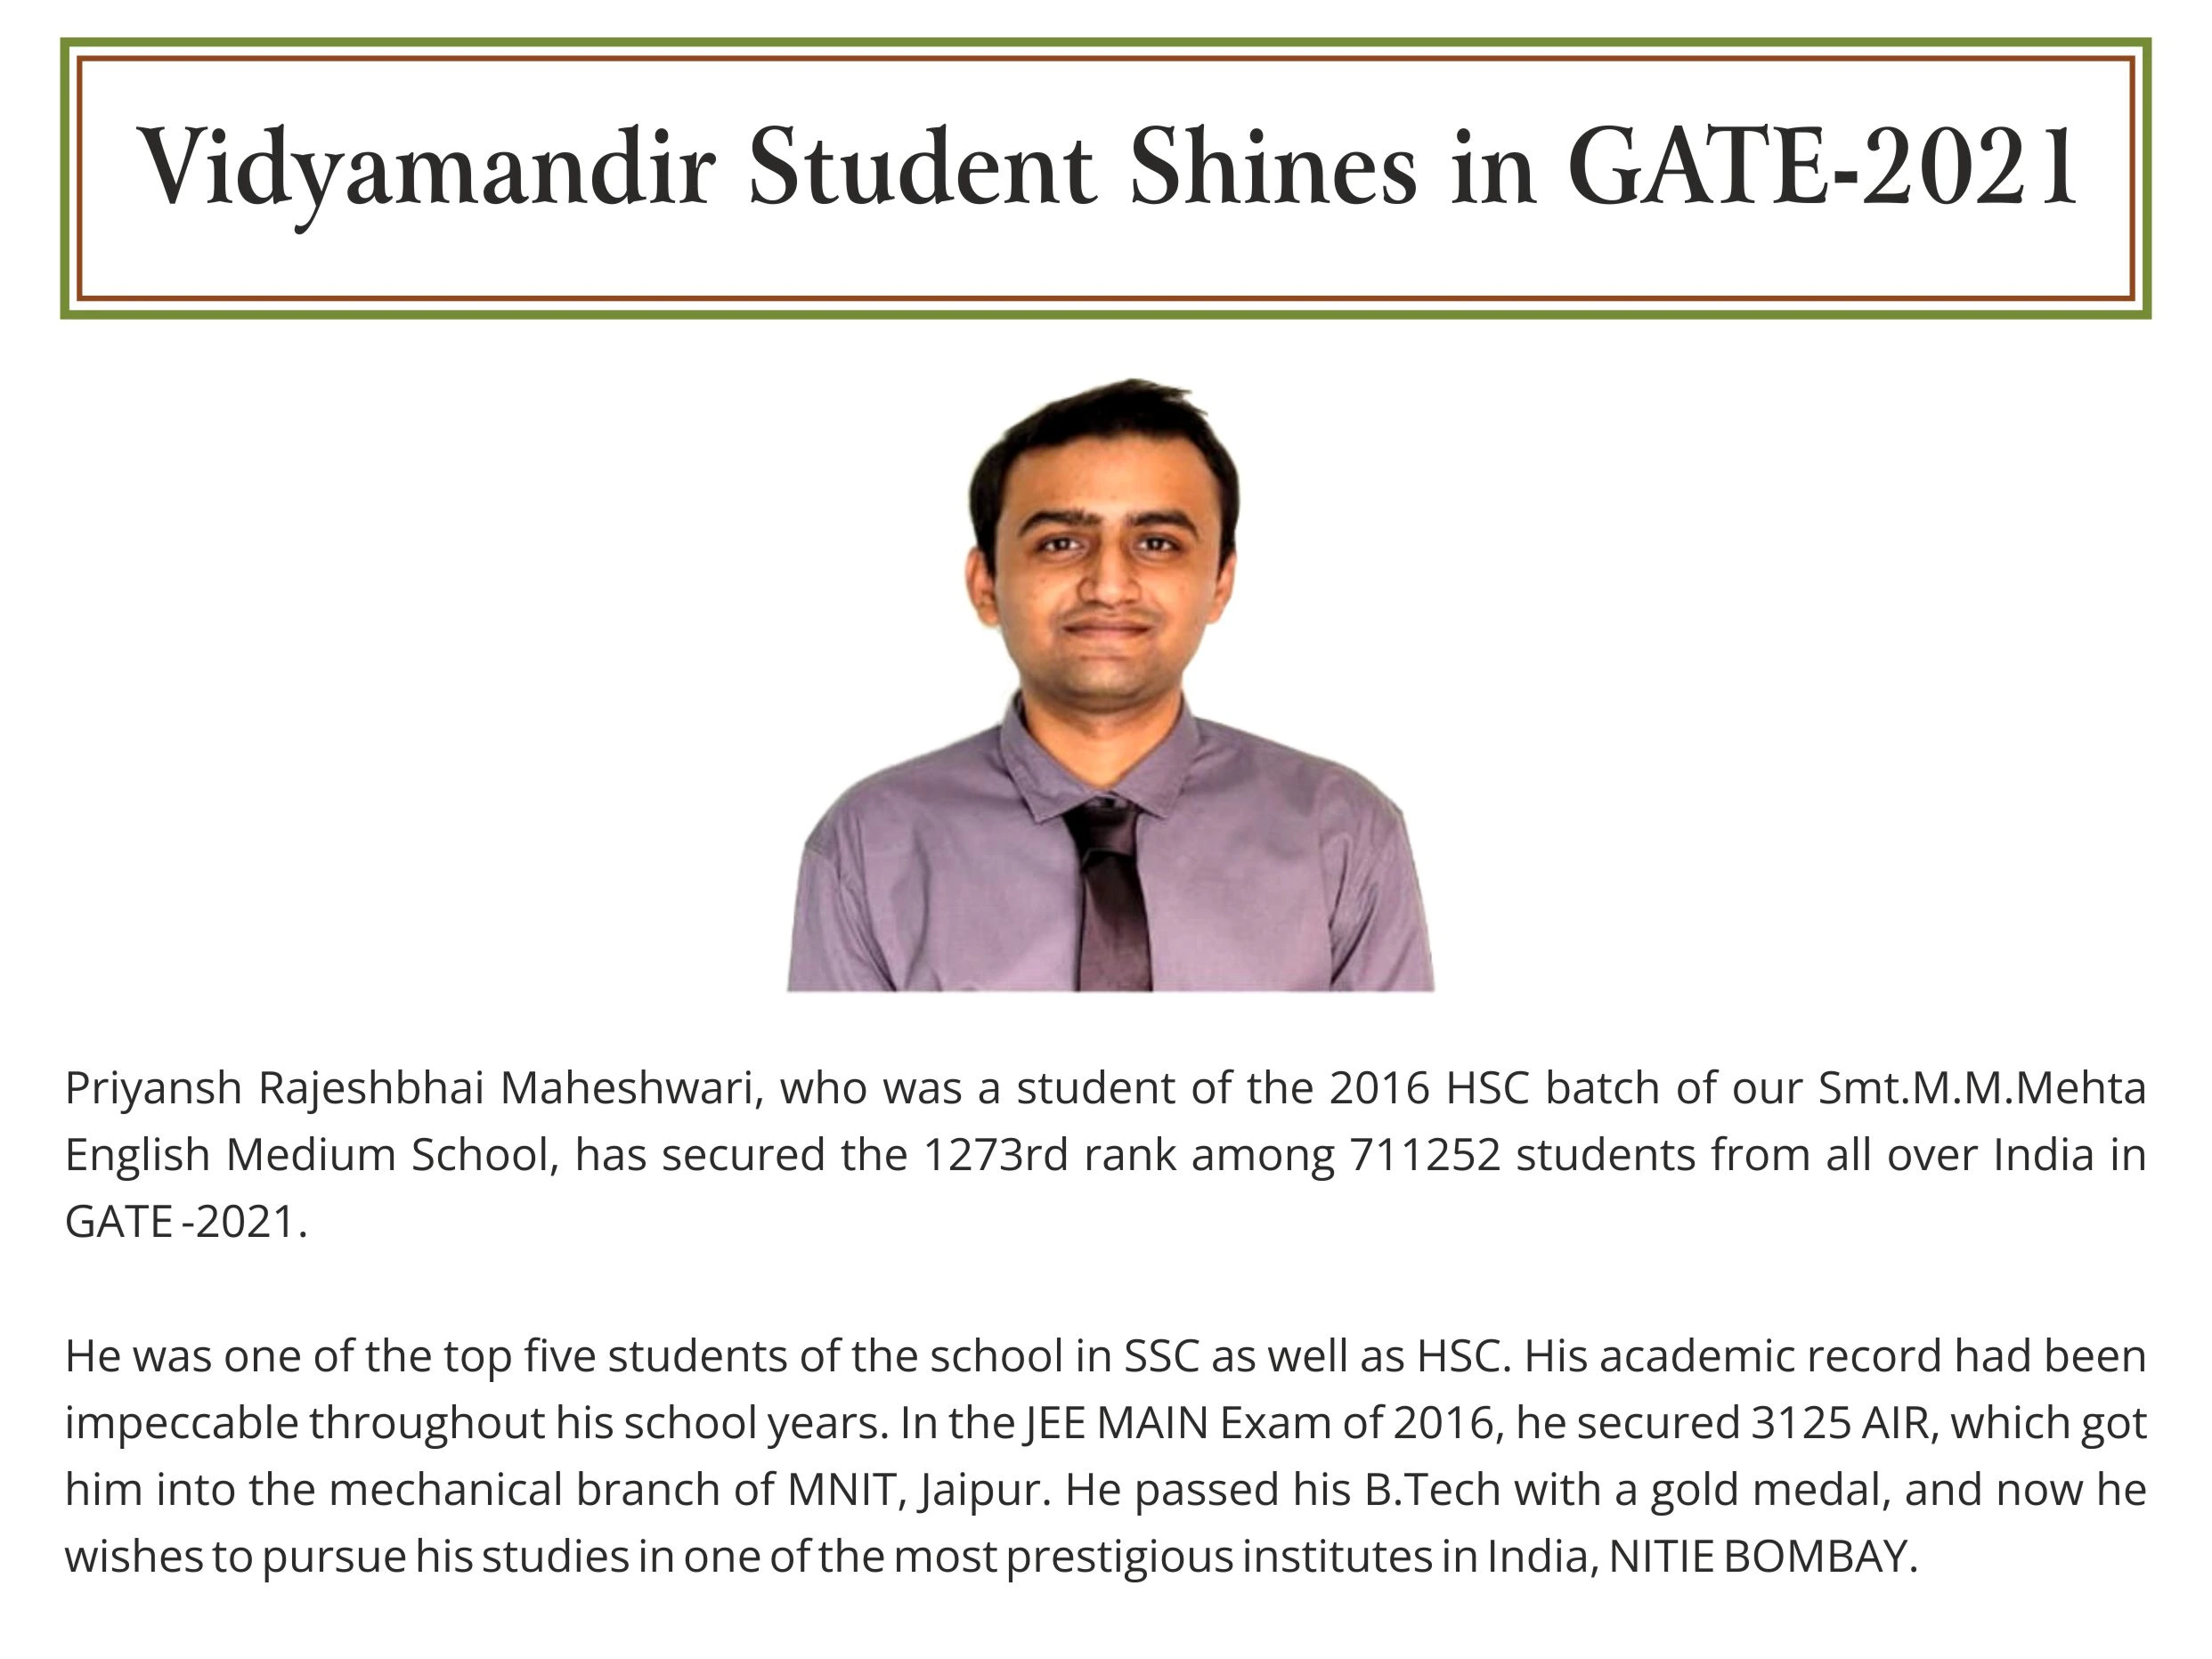 Priyansh Maheshwari - Vidyamandir Student Award